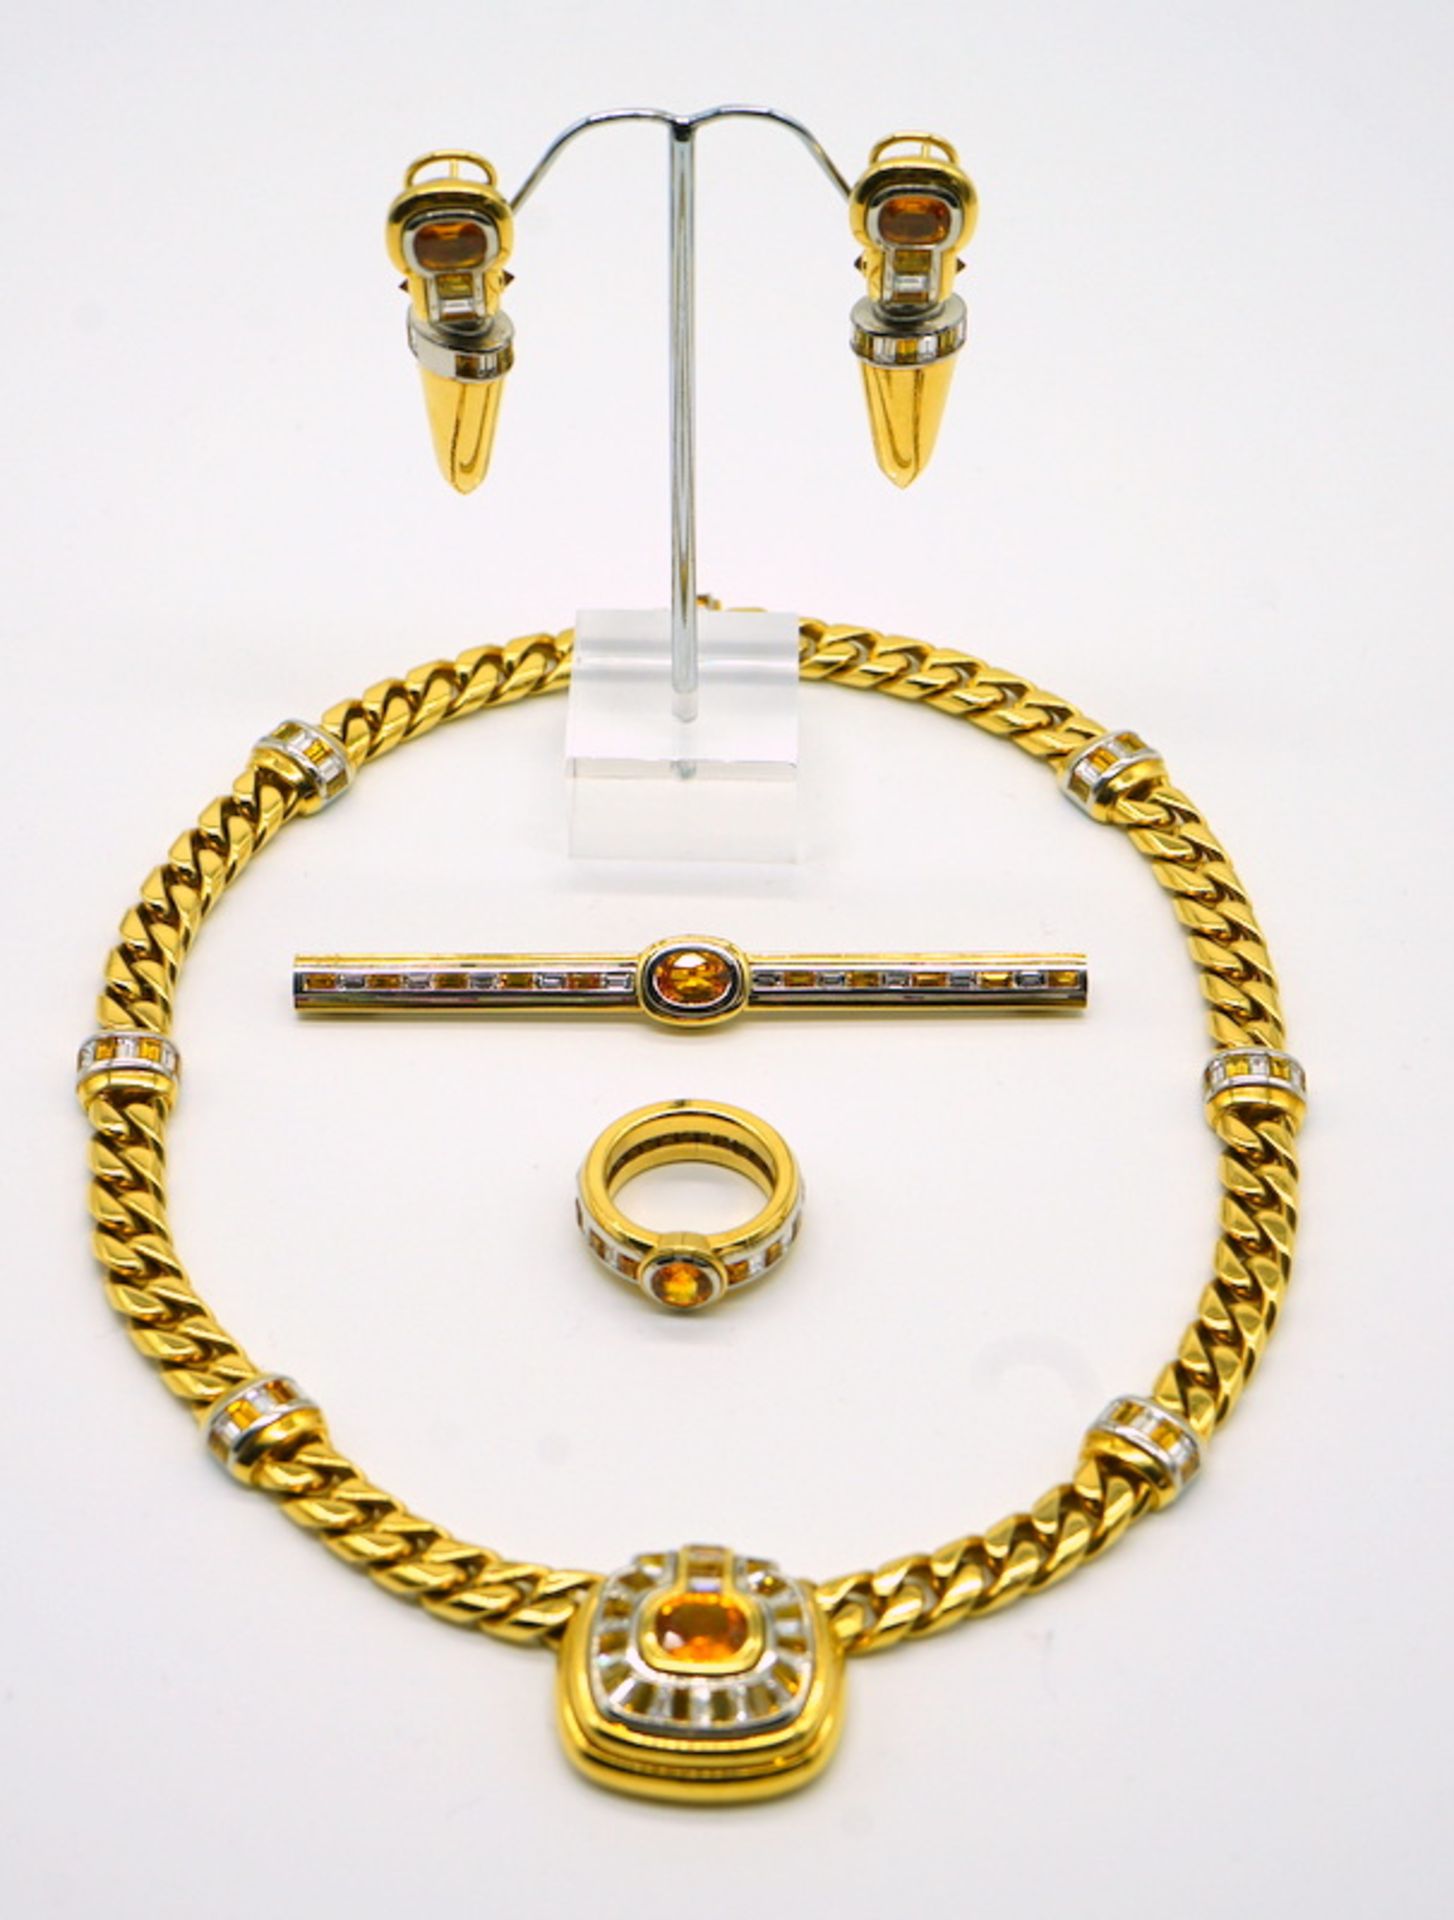 Parure mit Diamanten und gelben Saphiren, 750 GG, Juweliersanfertigung